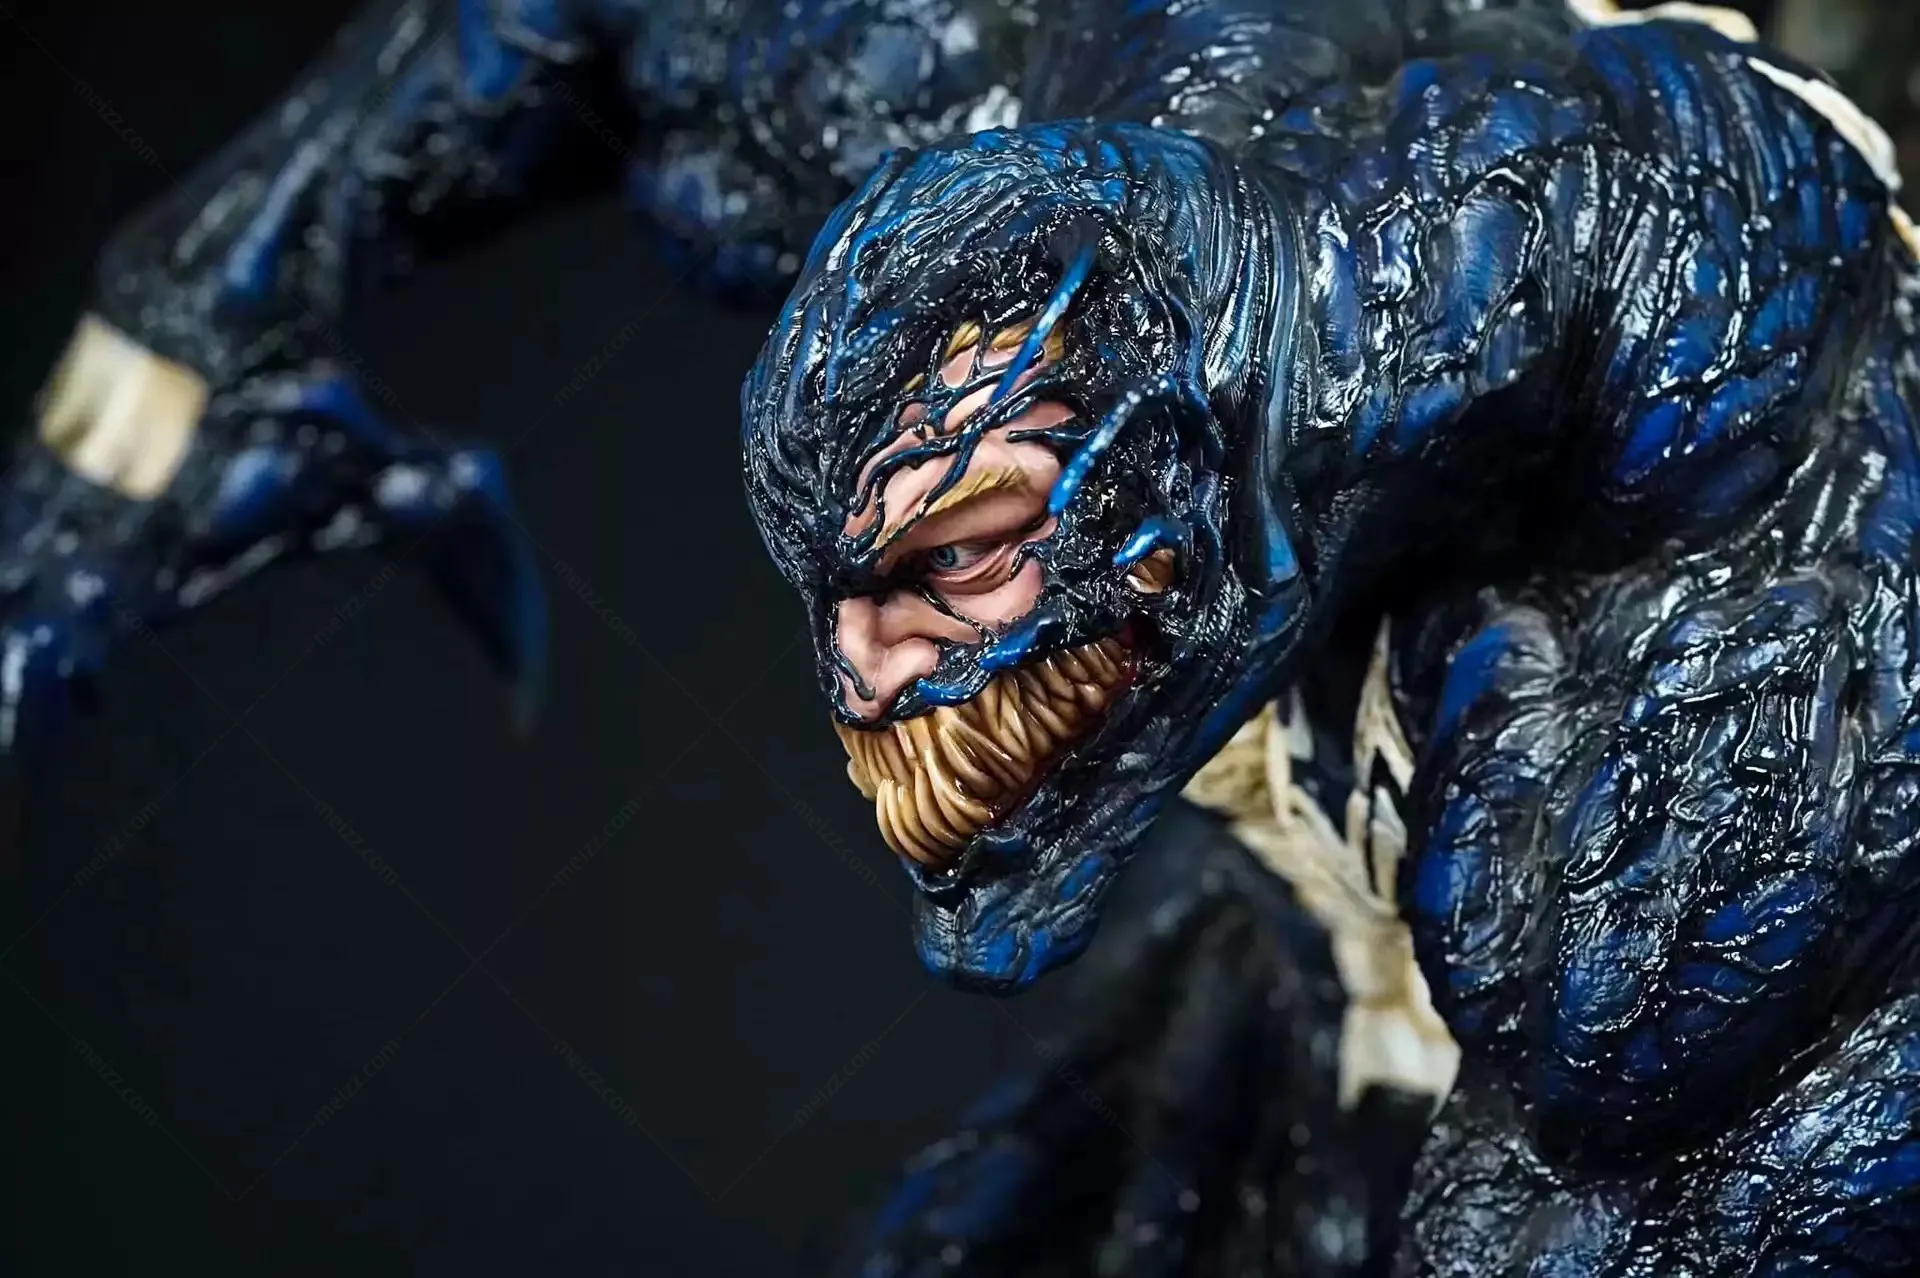 Venom Statue for Sale